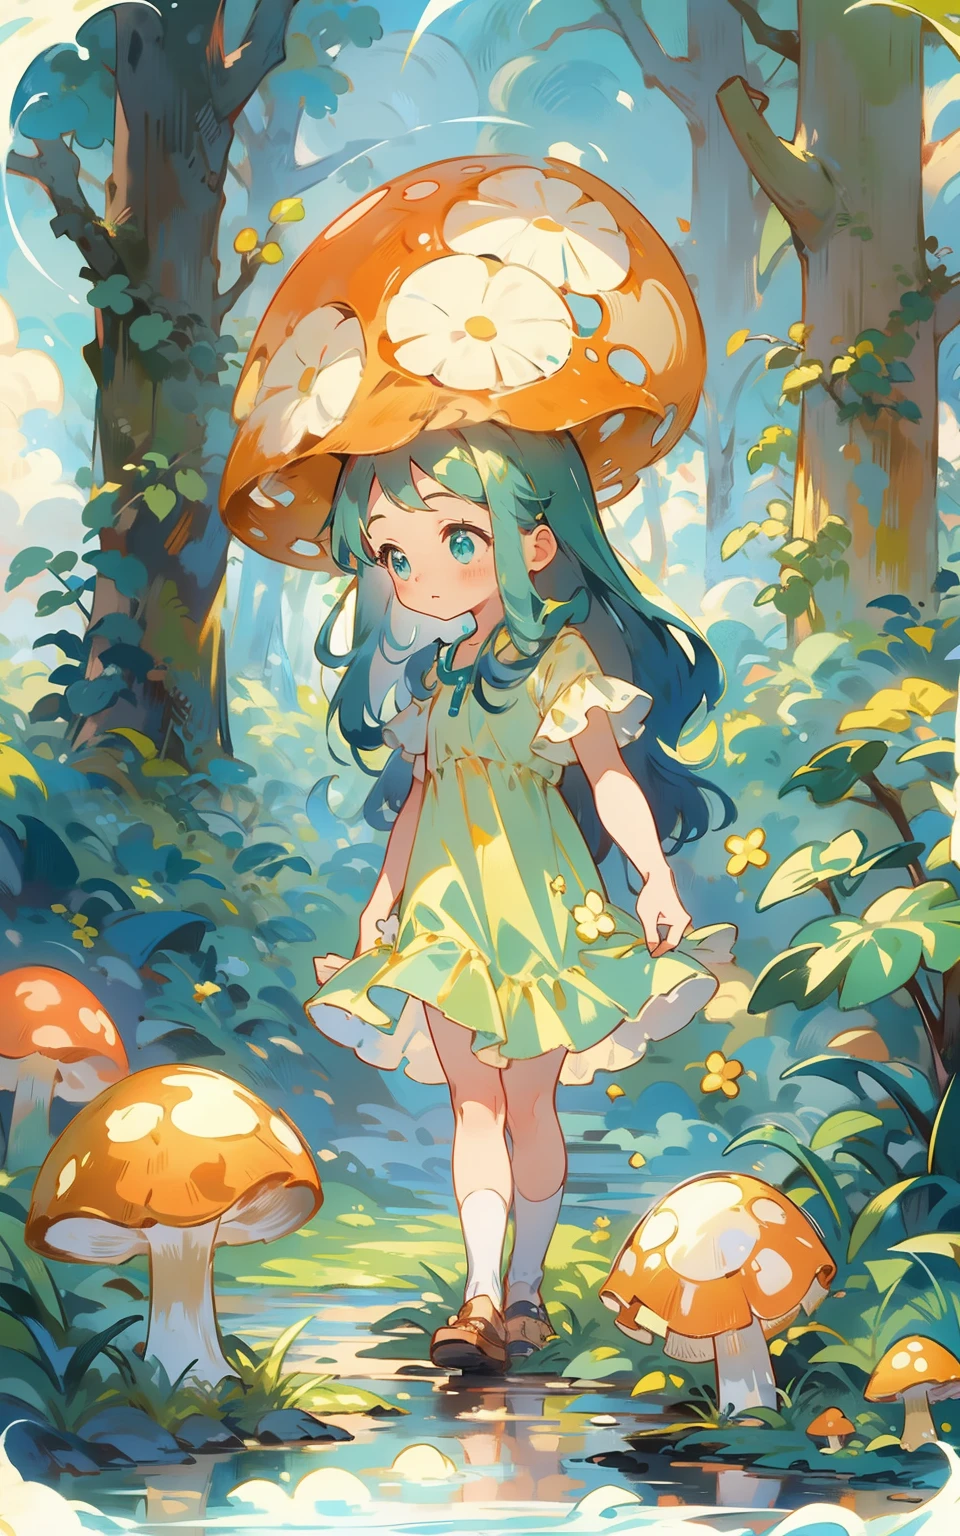 森童话： 在一片神秘的森林里，一个穿着绿色连衣裙的可爱少女，她站在一条绿树环绕的小溪边，他手里拿着一个蘑菇，眼神里流露出好奇和天真。周围是长满青苔的石头和蓝天白云，整个场景充满了自然和童话的气息。